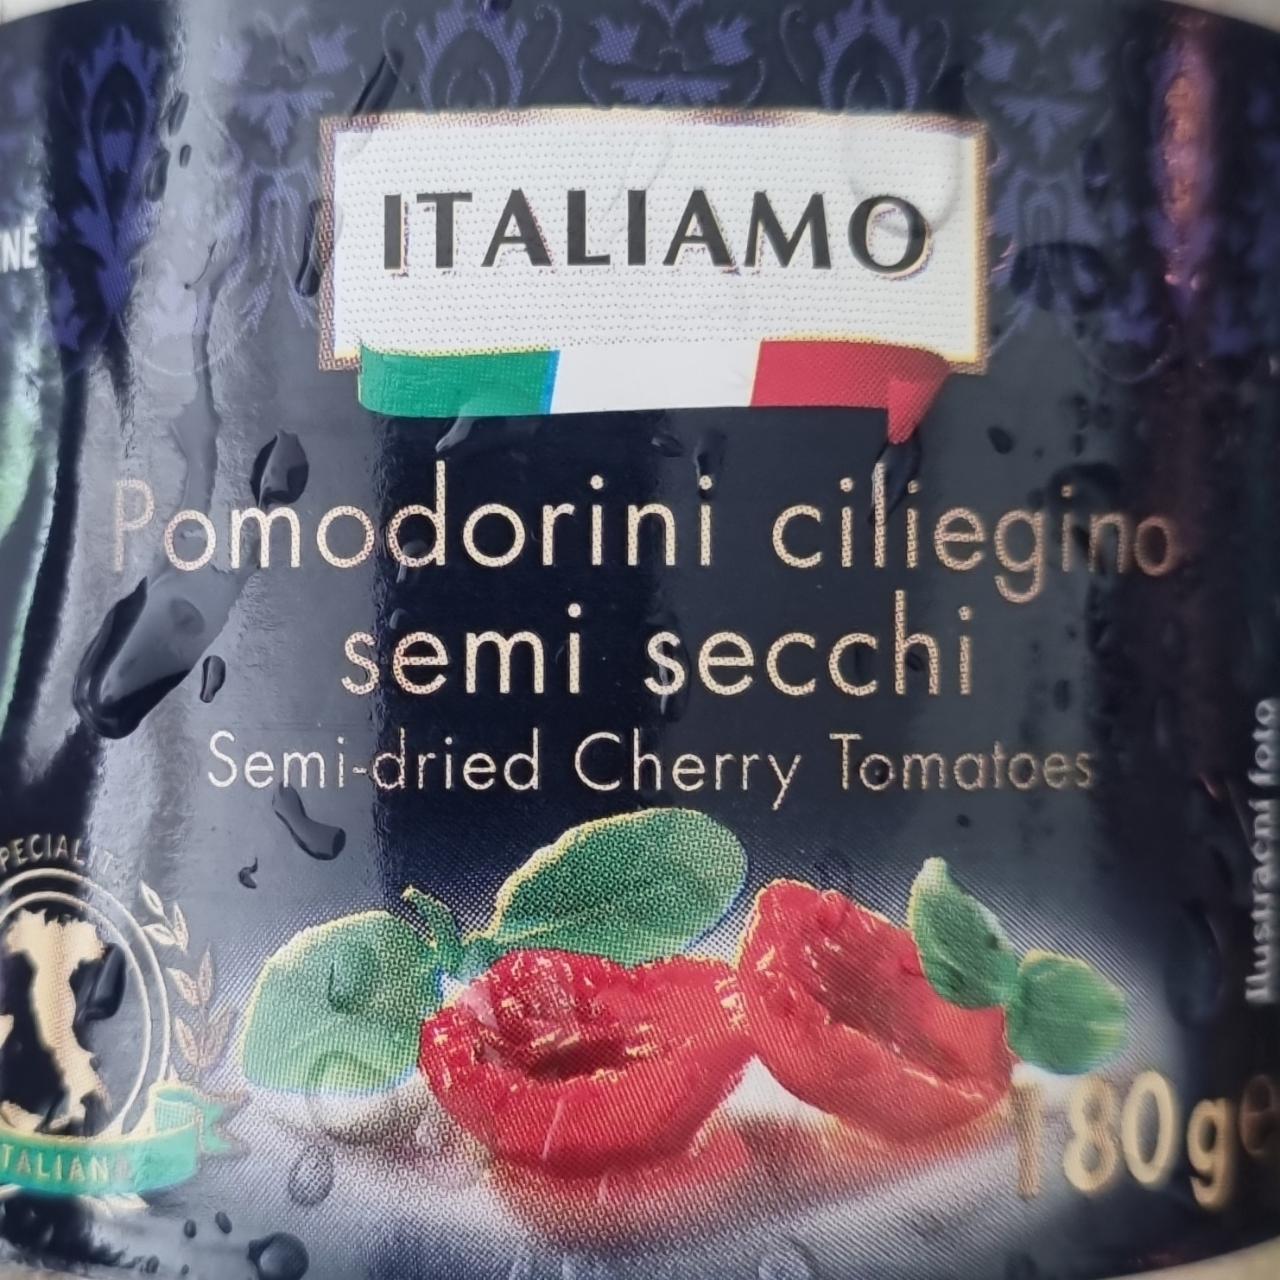 Fotografie - Pomodorini ciliegino semi secchi Italiamo